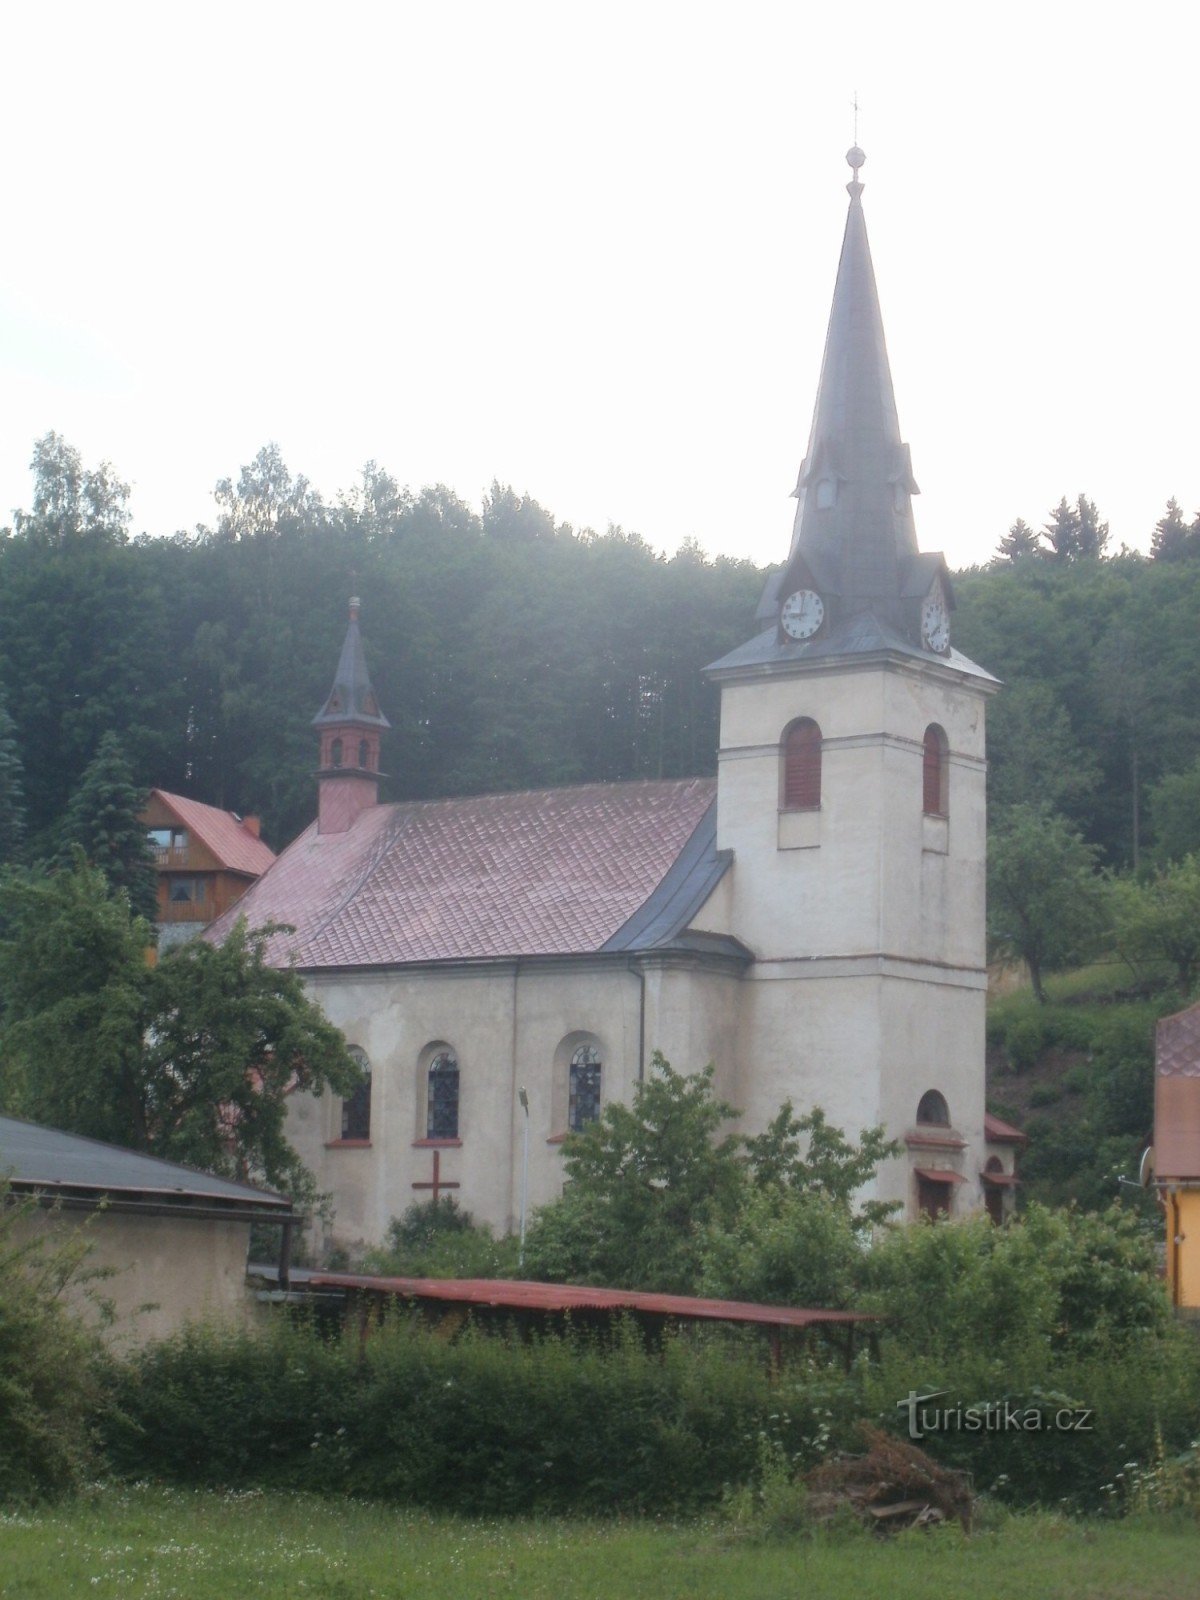 Svoboda nad Úpou - church of St. Jan Nepomucký